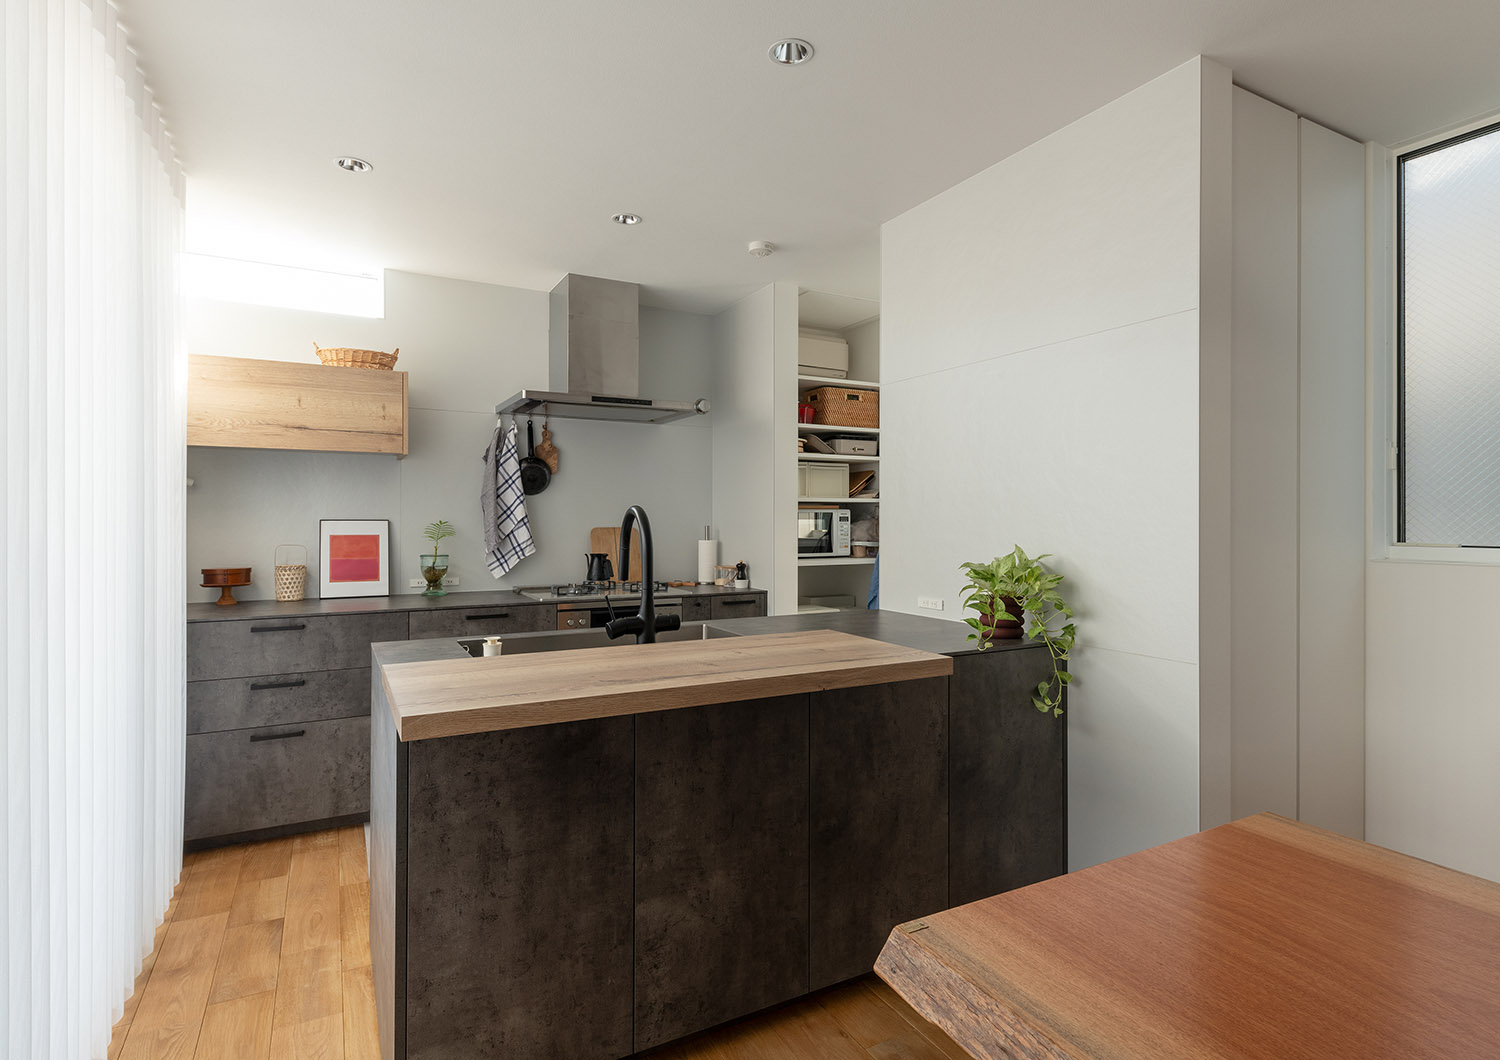 木のカウンターを取り付けたアイアン風のⅡ型キッチン・デザイン住宅